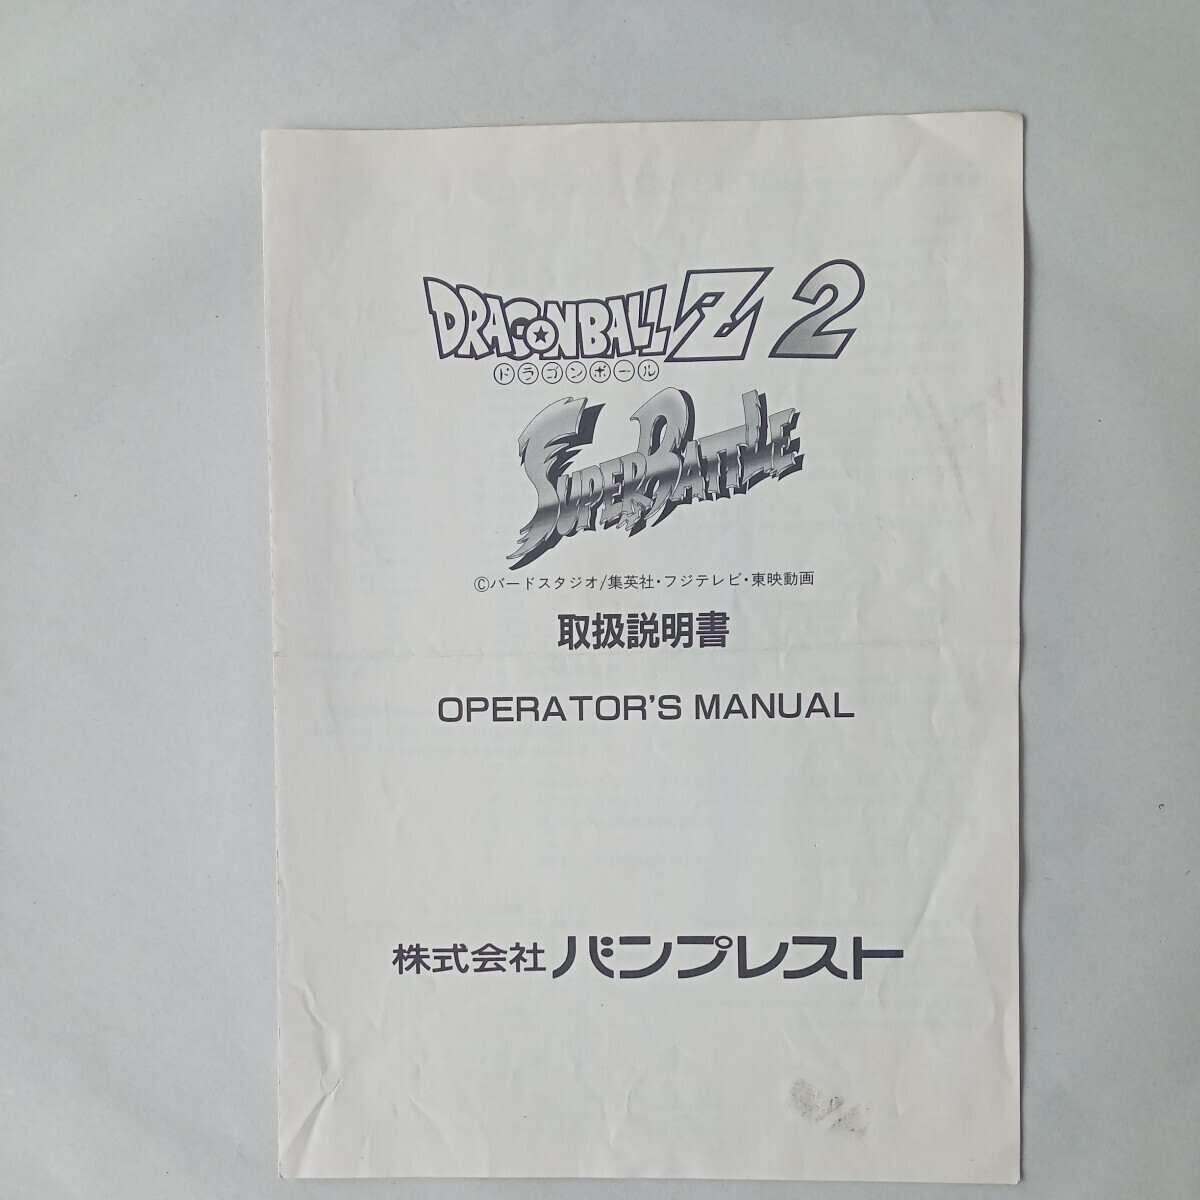  van Puresuto Dragon Ball Z2 super Battle instrument карта 2 листов obi instrument 2 листов инструкция по эксплуатации 1 часть комплект 